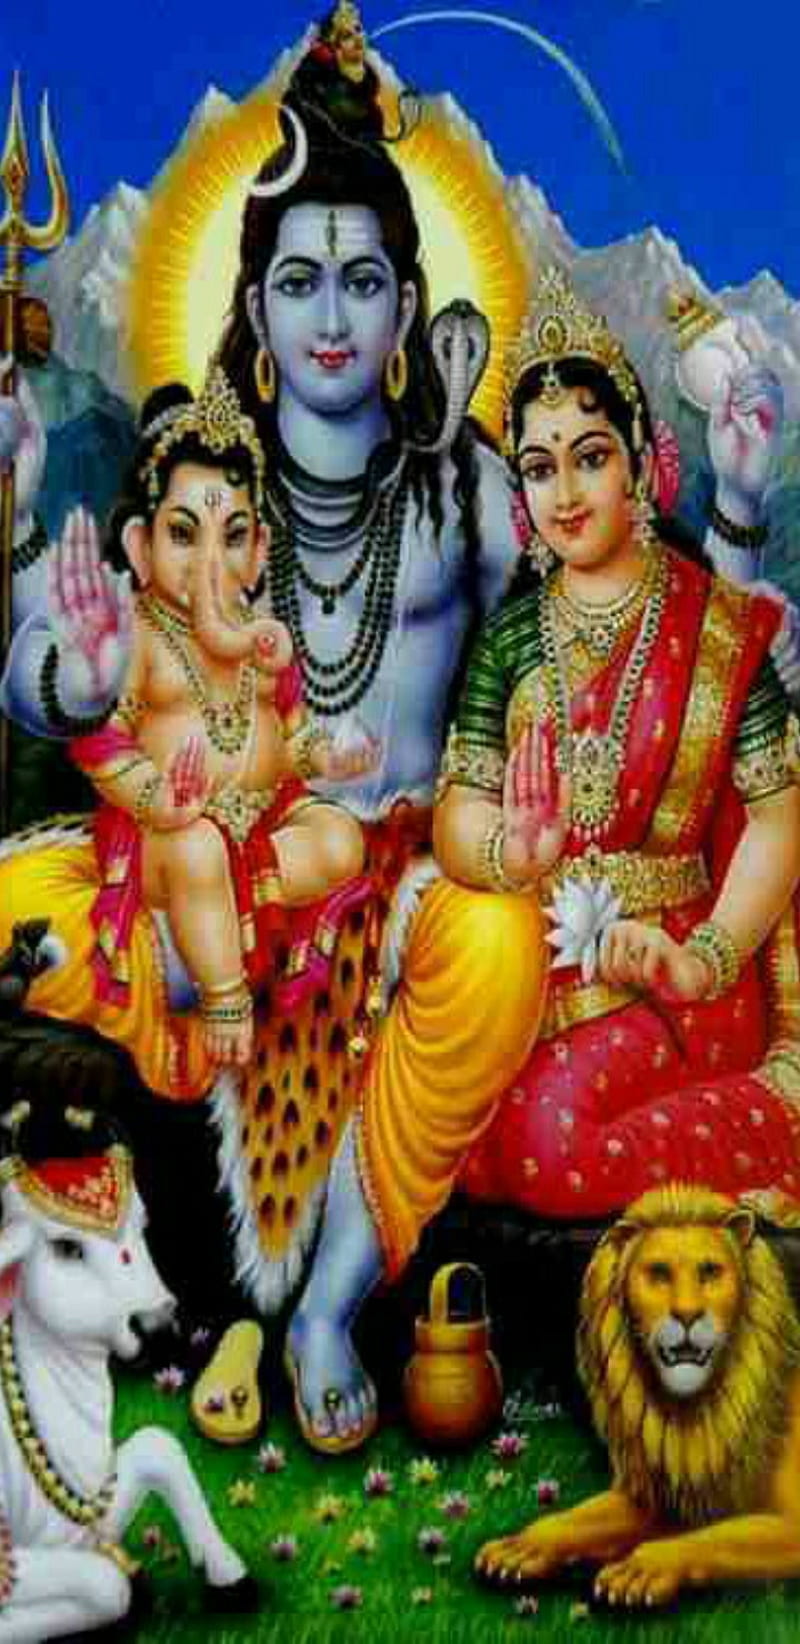 Shiva,Parvati, Kartik and Ganesha | Shiva parvati images, Lord shiva  family, Lord shiva statue